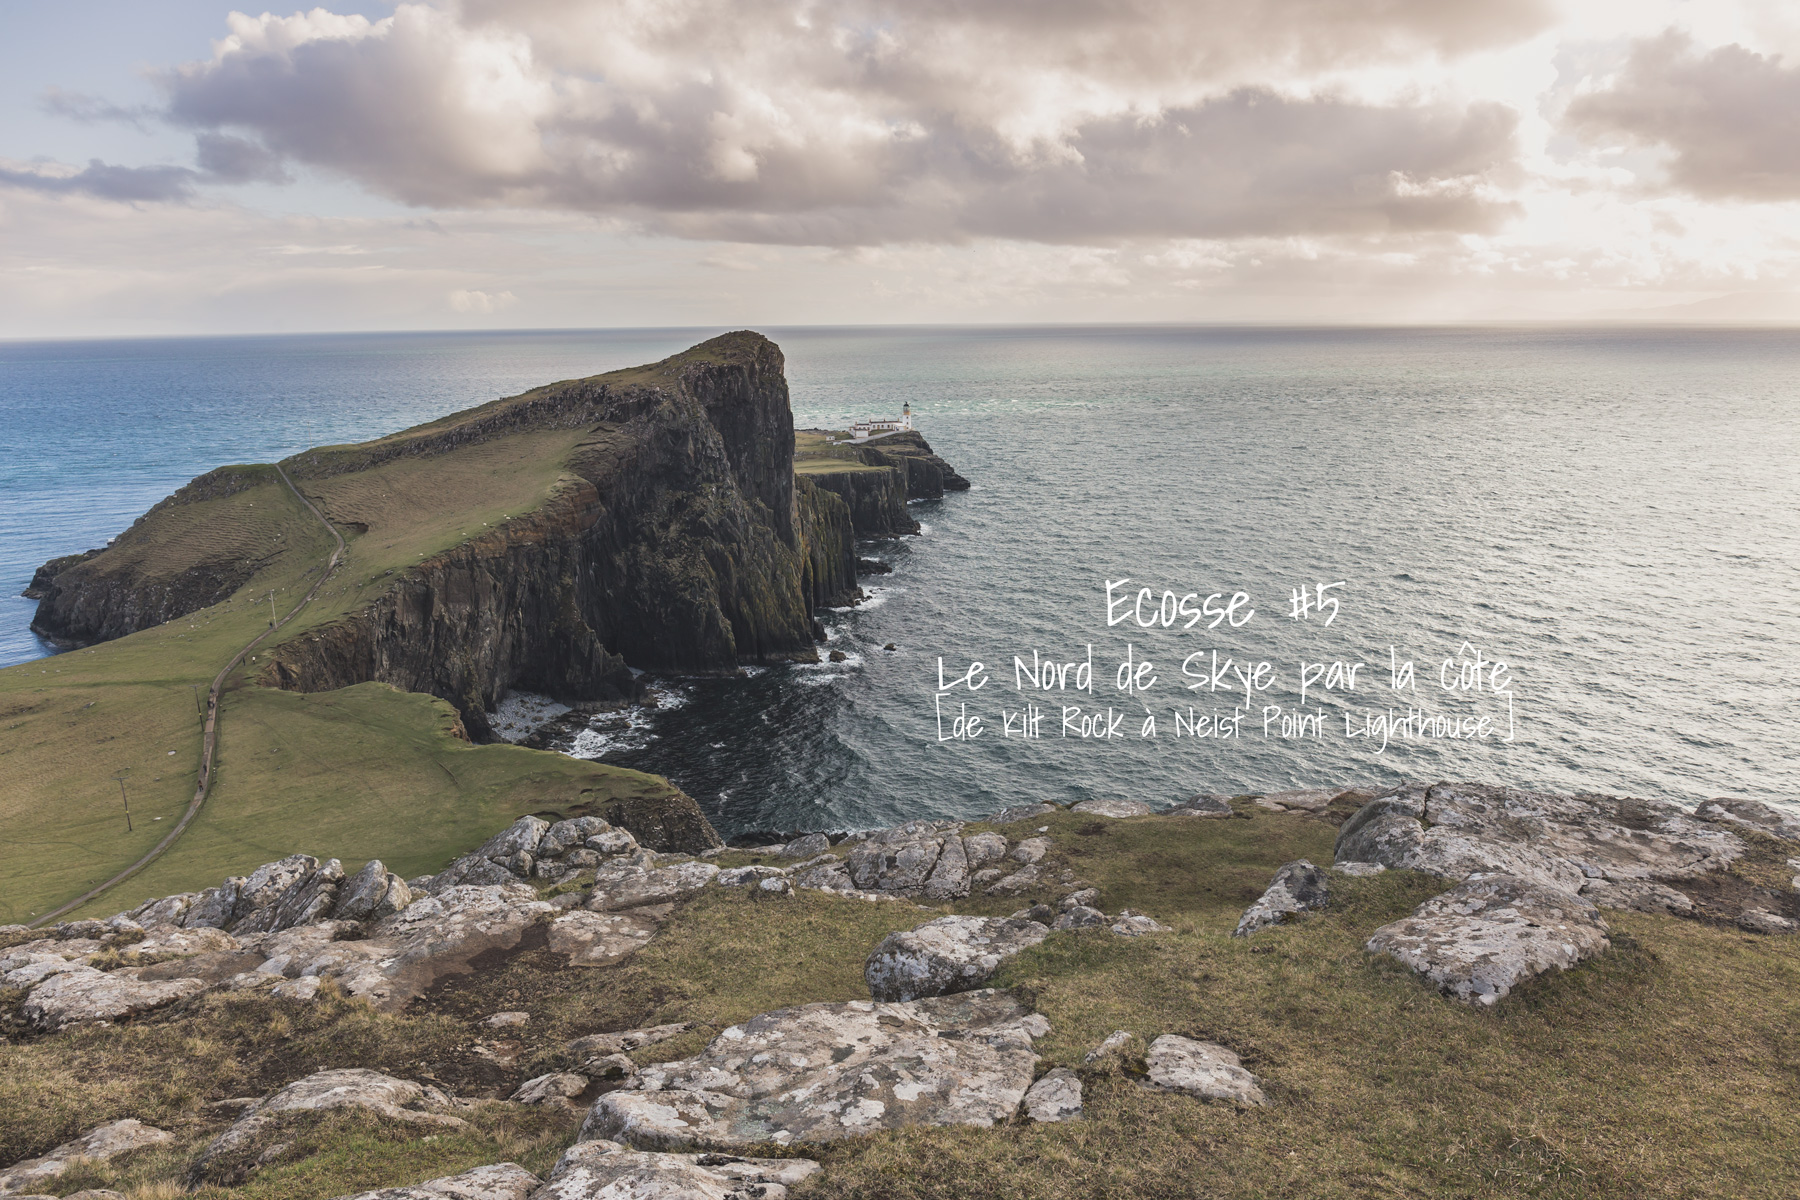 Ecosse #5 Ile de Skye [le Nord de l’île par les côtes]